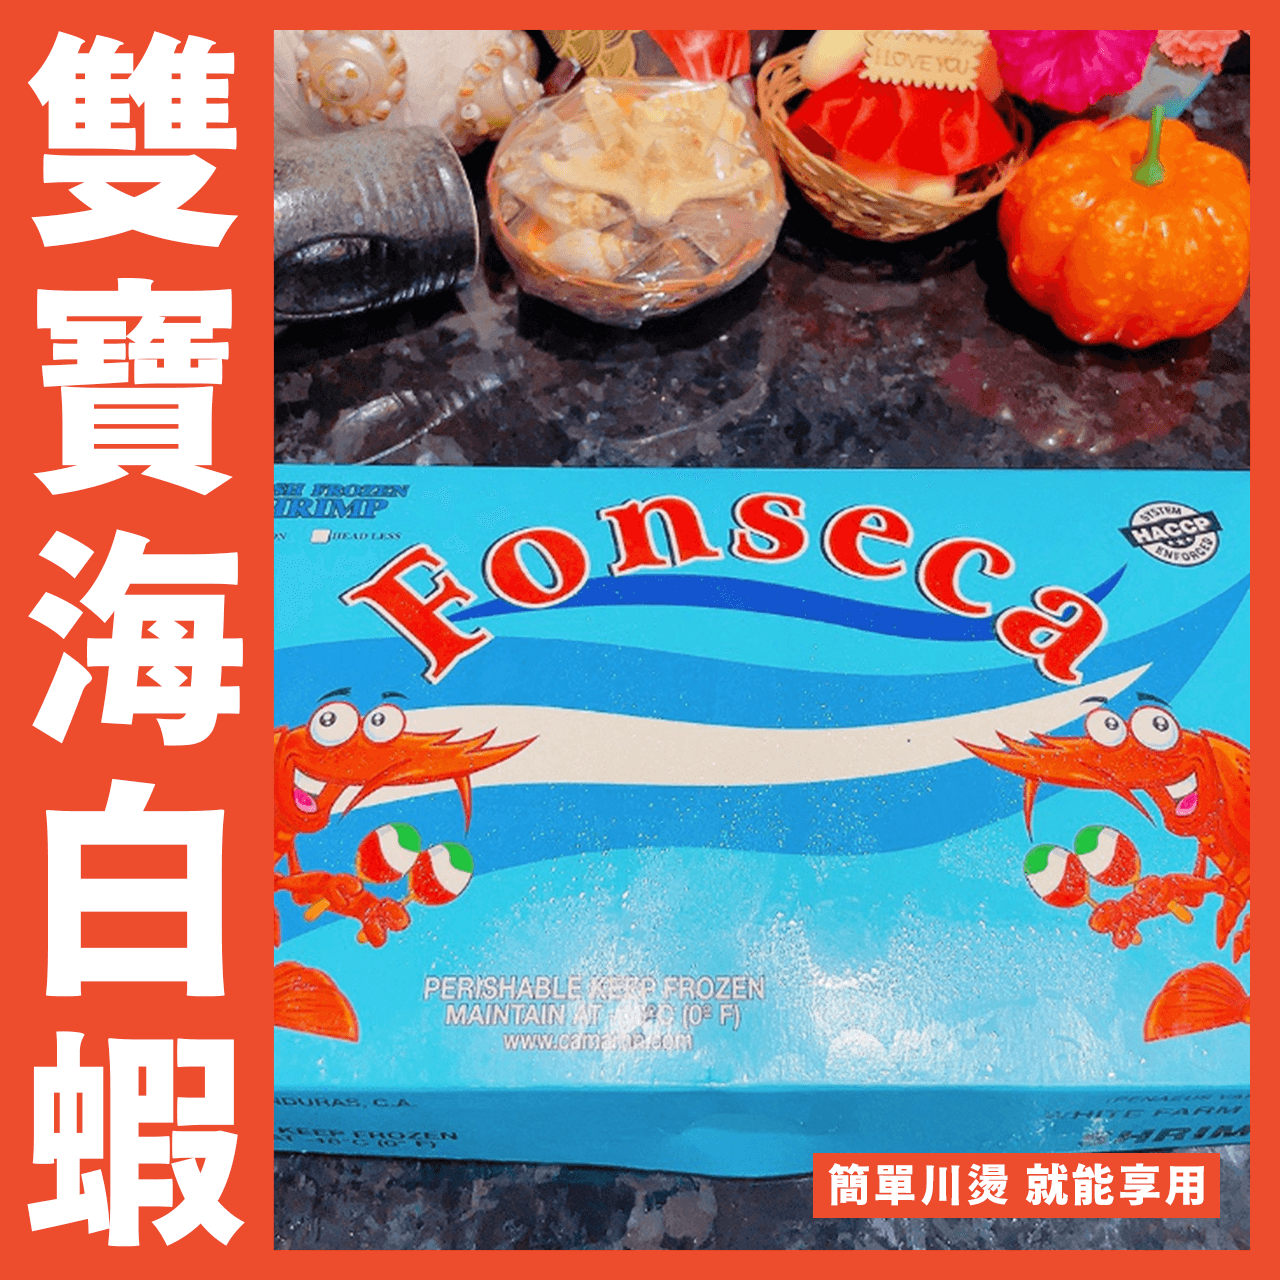 【天天來海鮮】宏都拉斯雙寶海白蝦重量:1150克